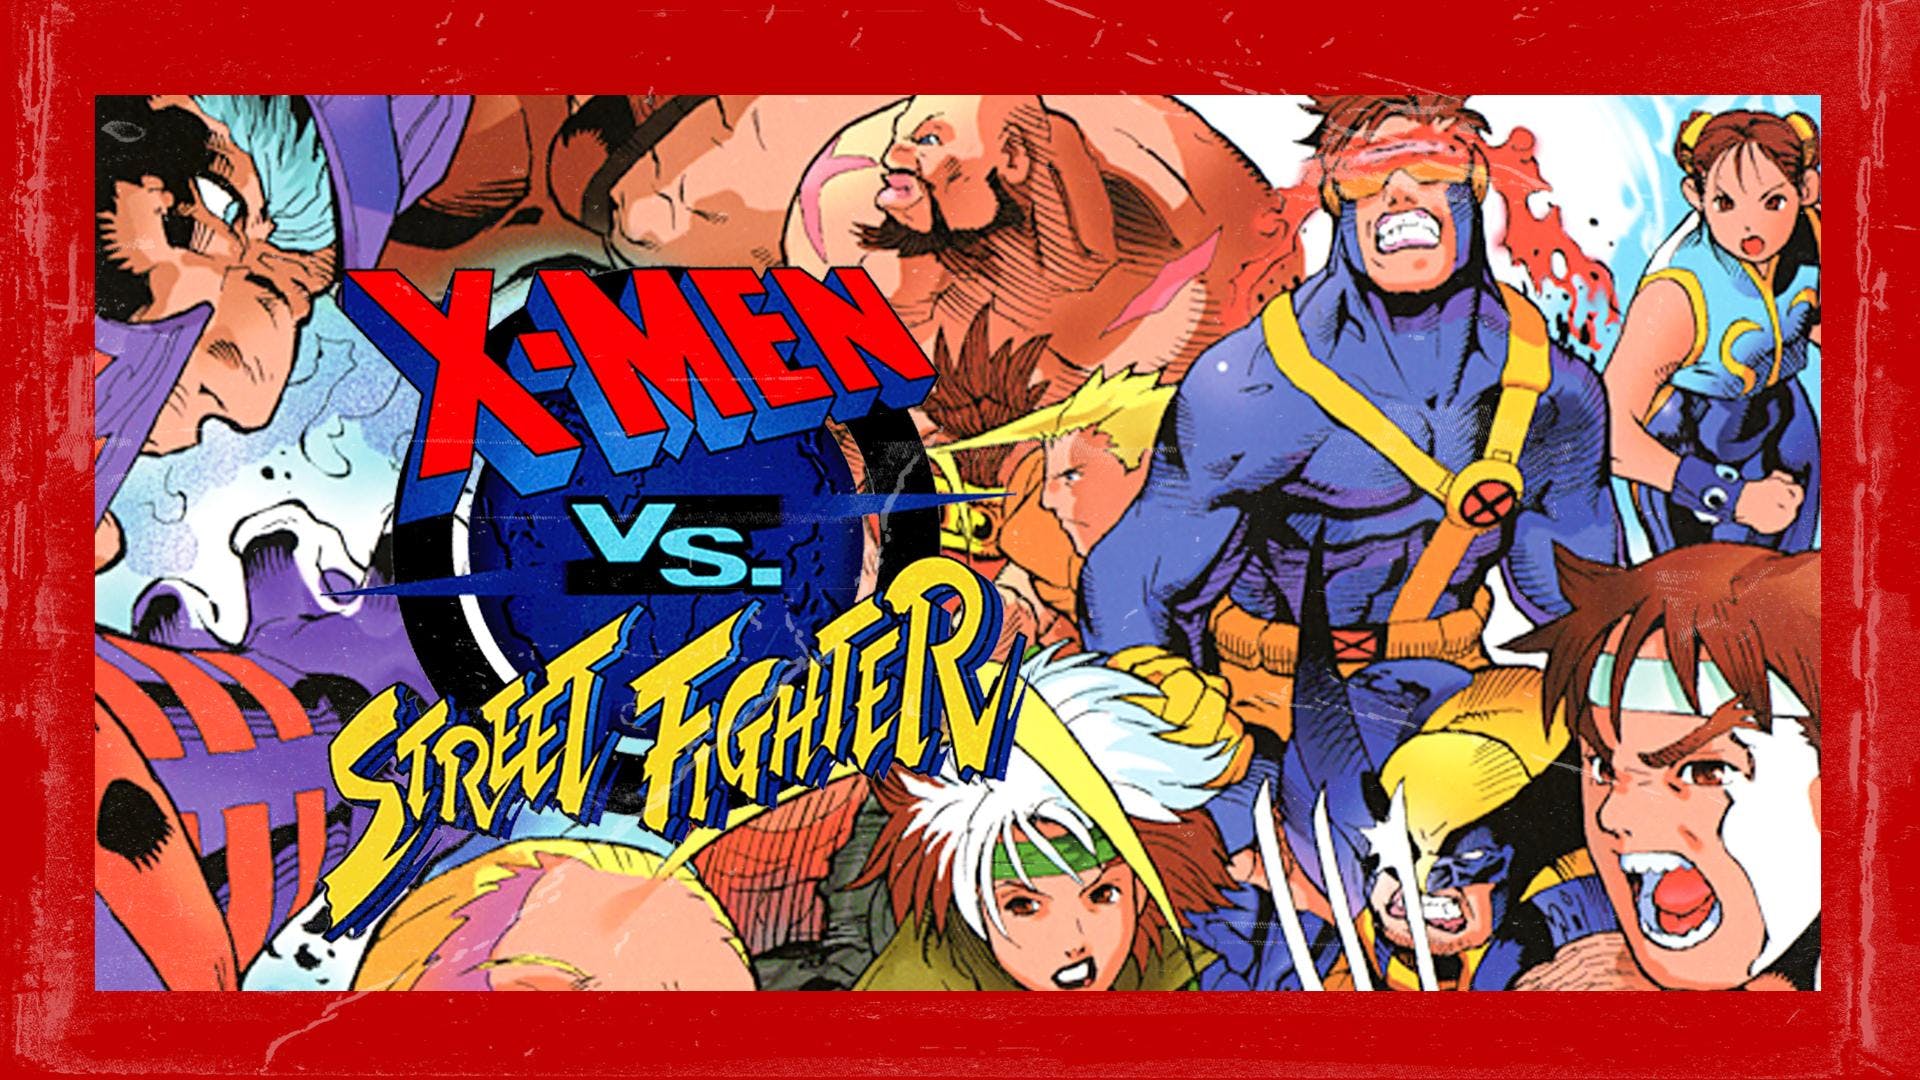 xmen vs street fighter poster